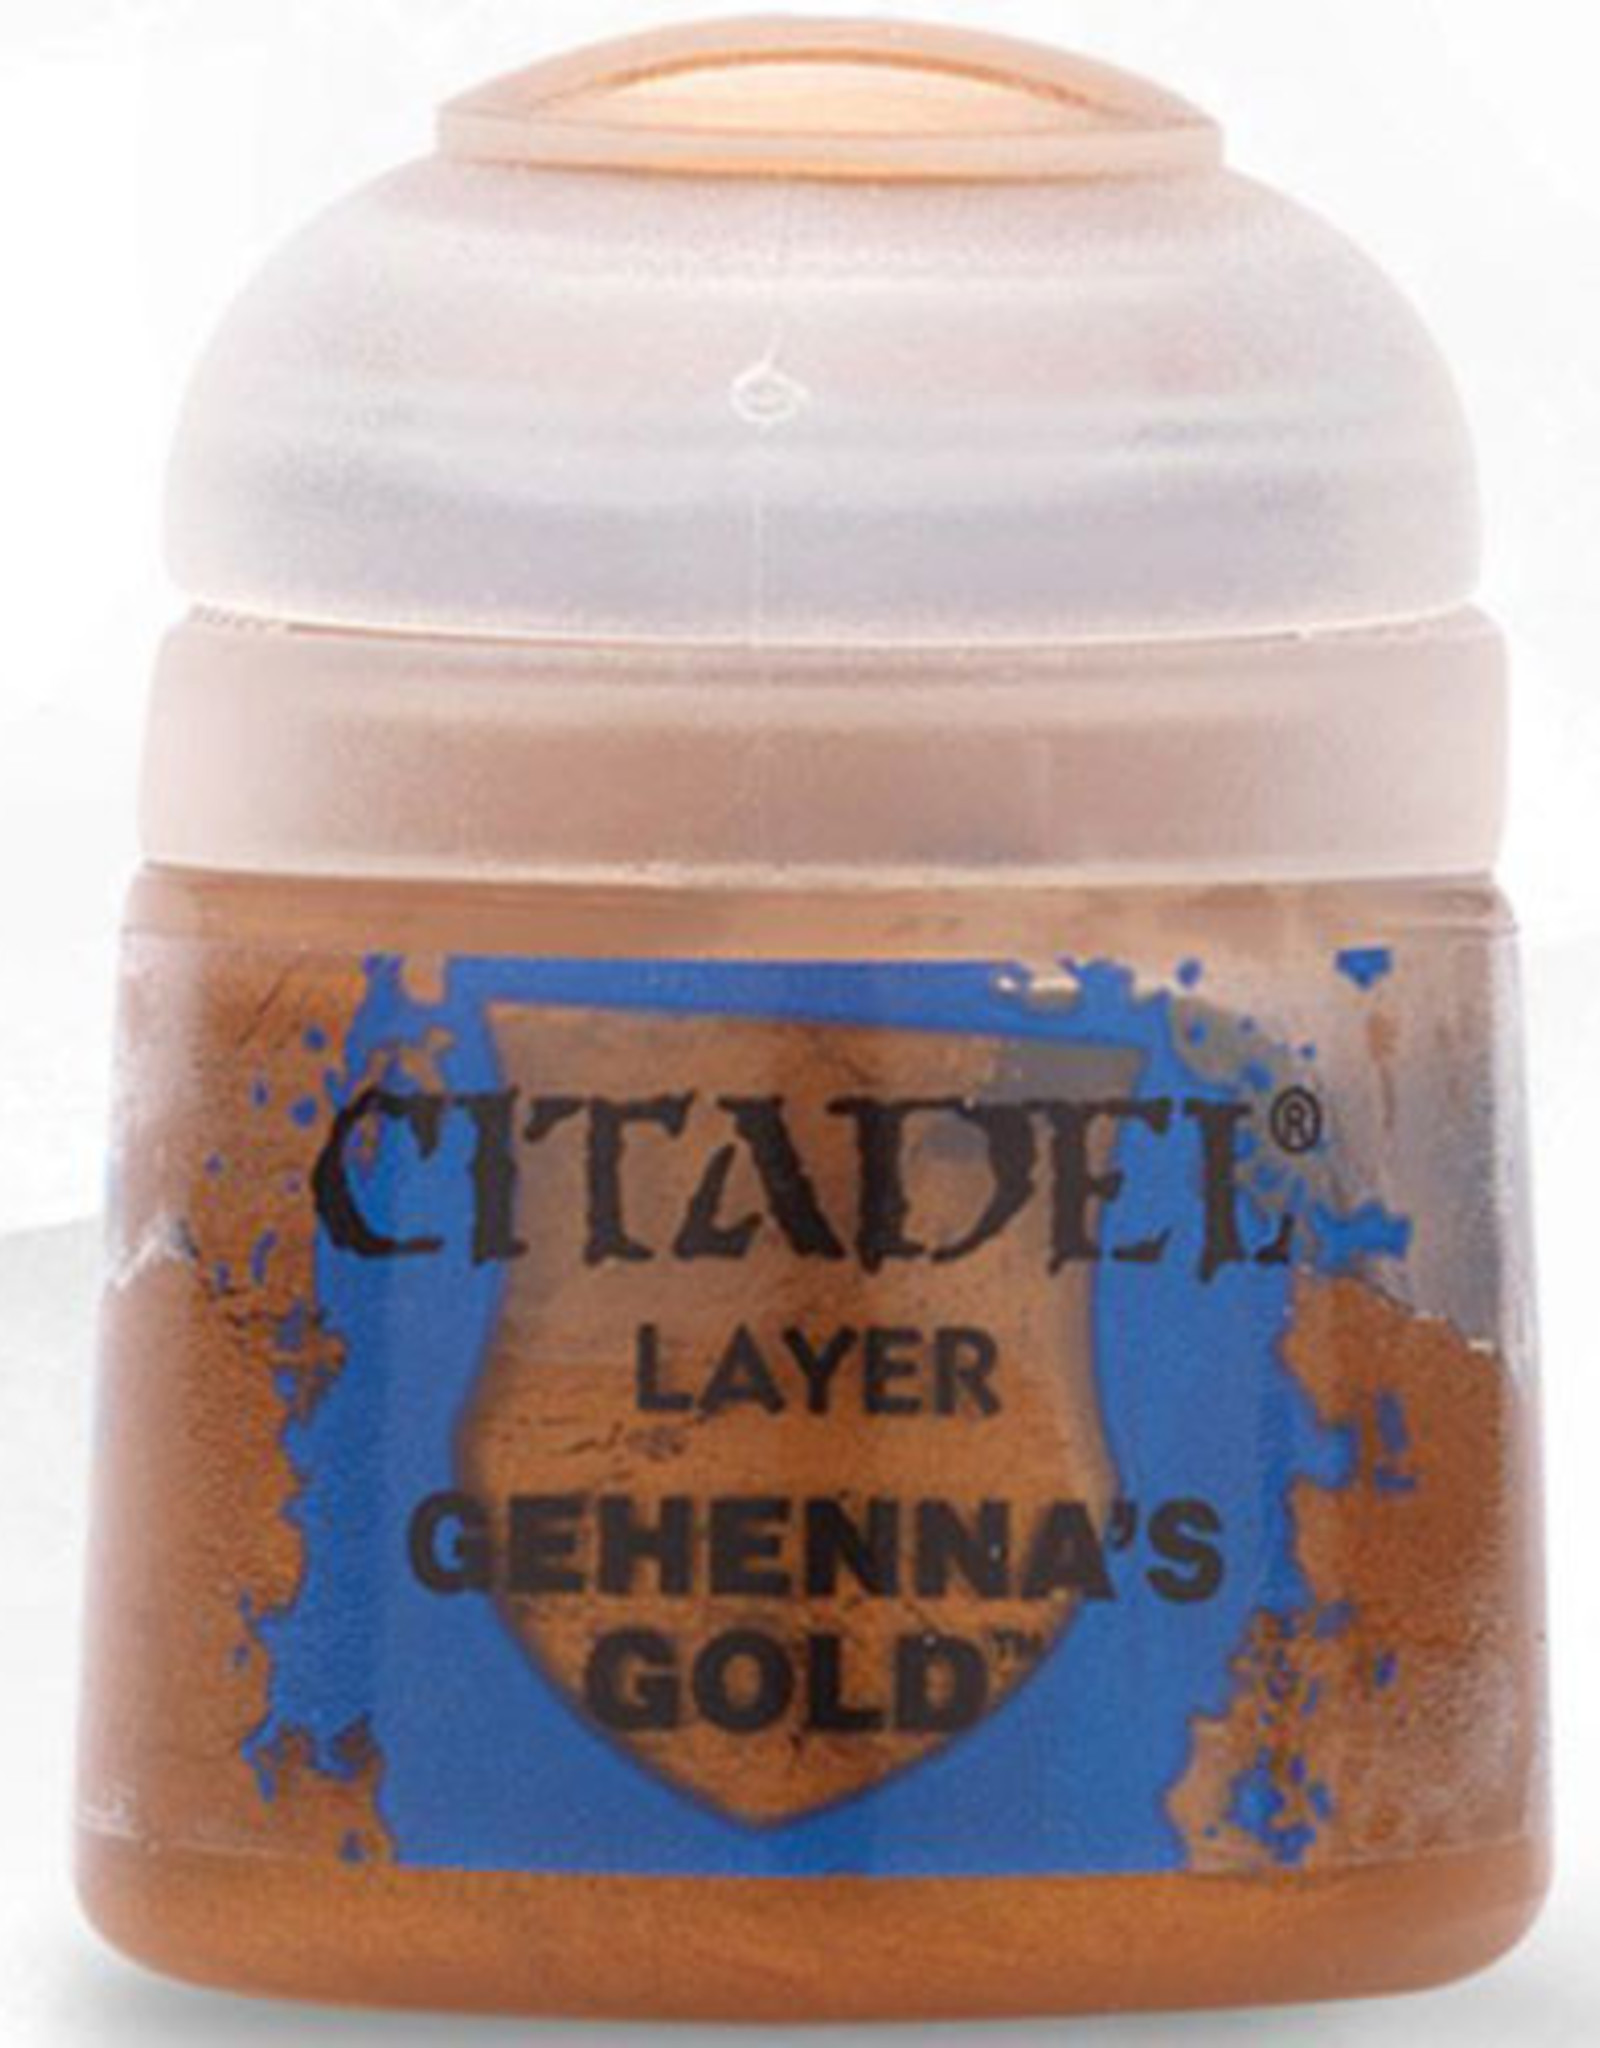 Games Workshop Citadel Layer: Gehenna's Gold